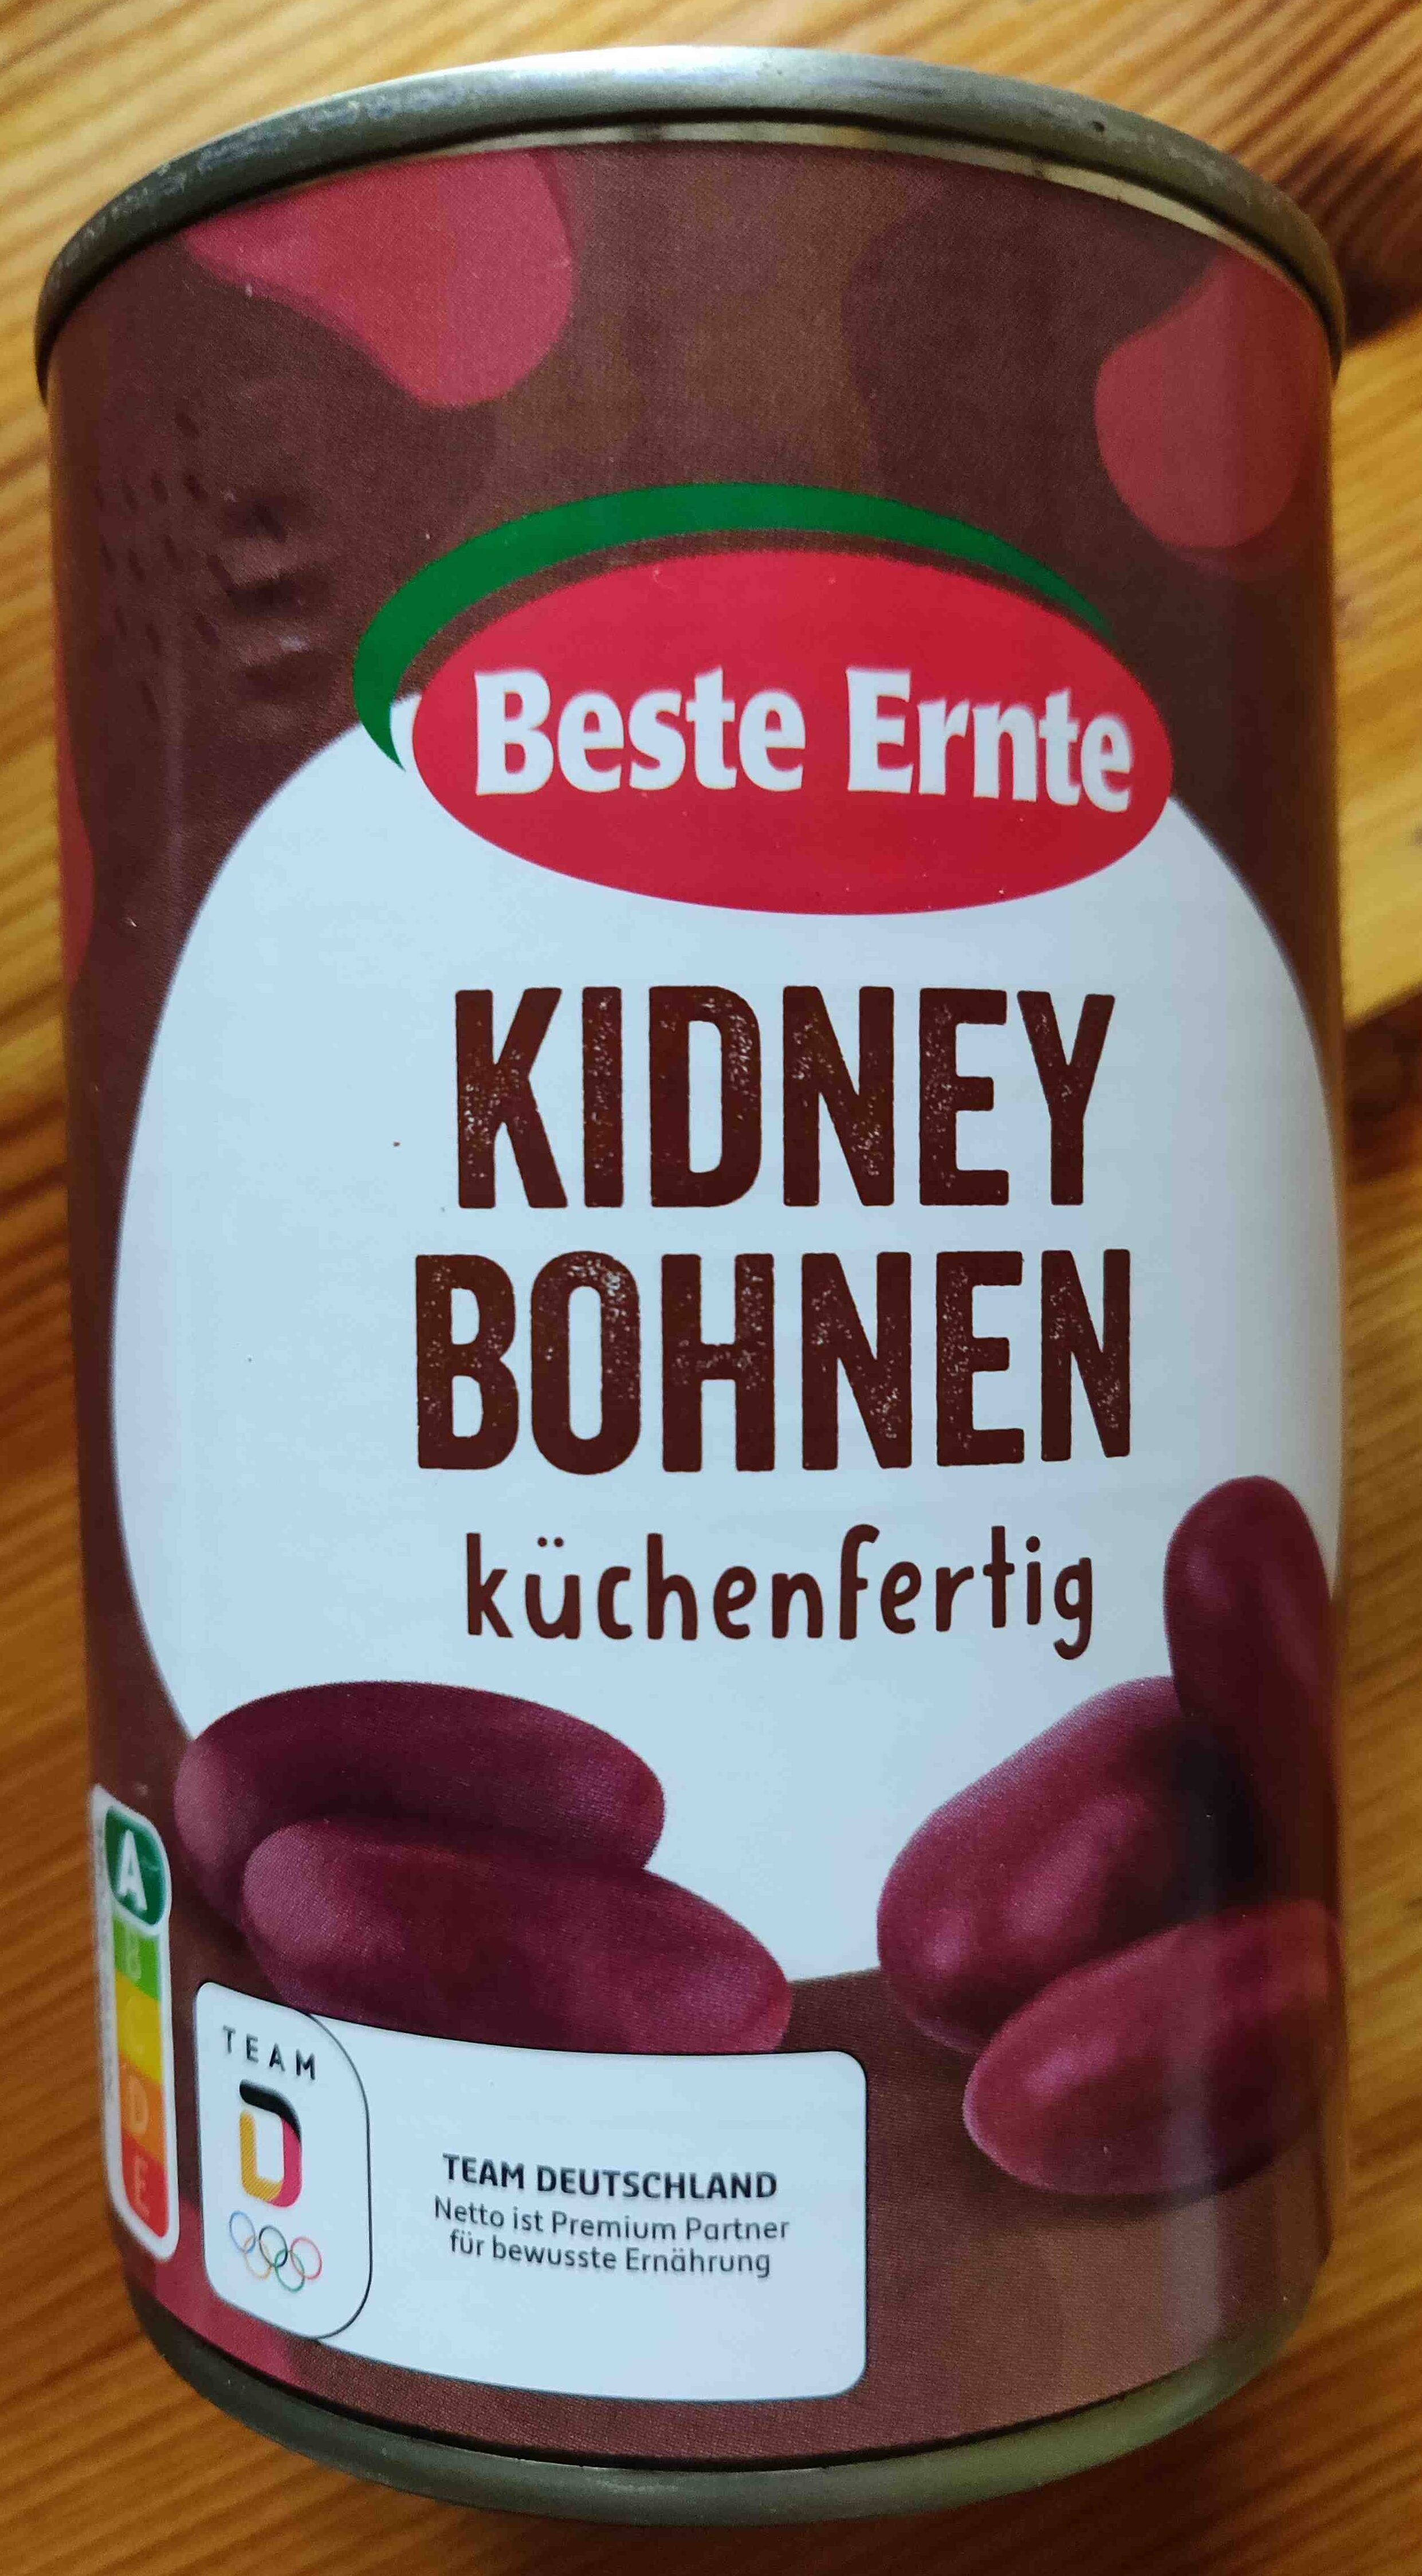 Kidney Bohnen - Product - de